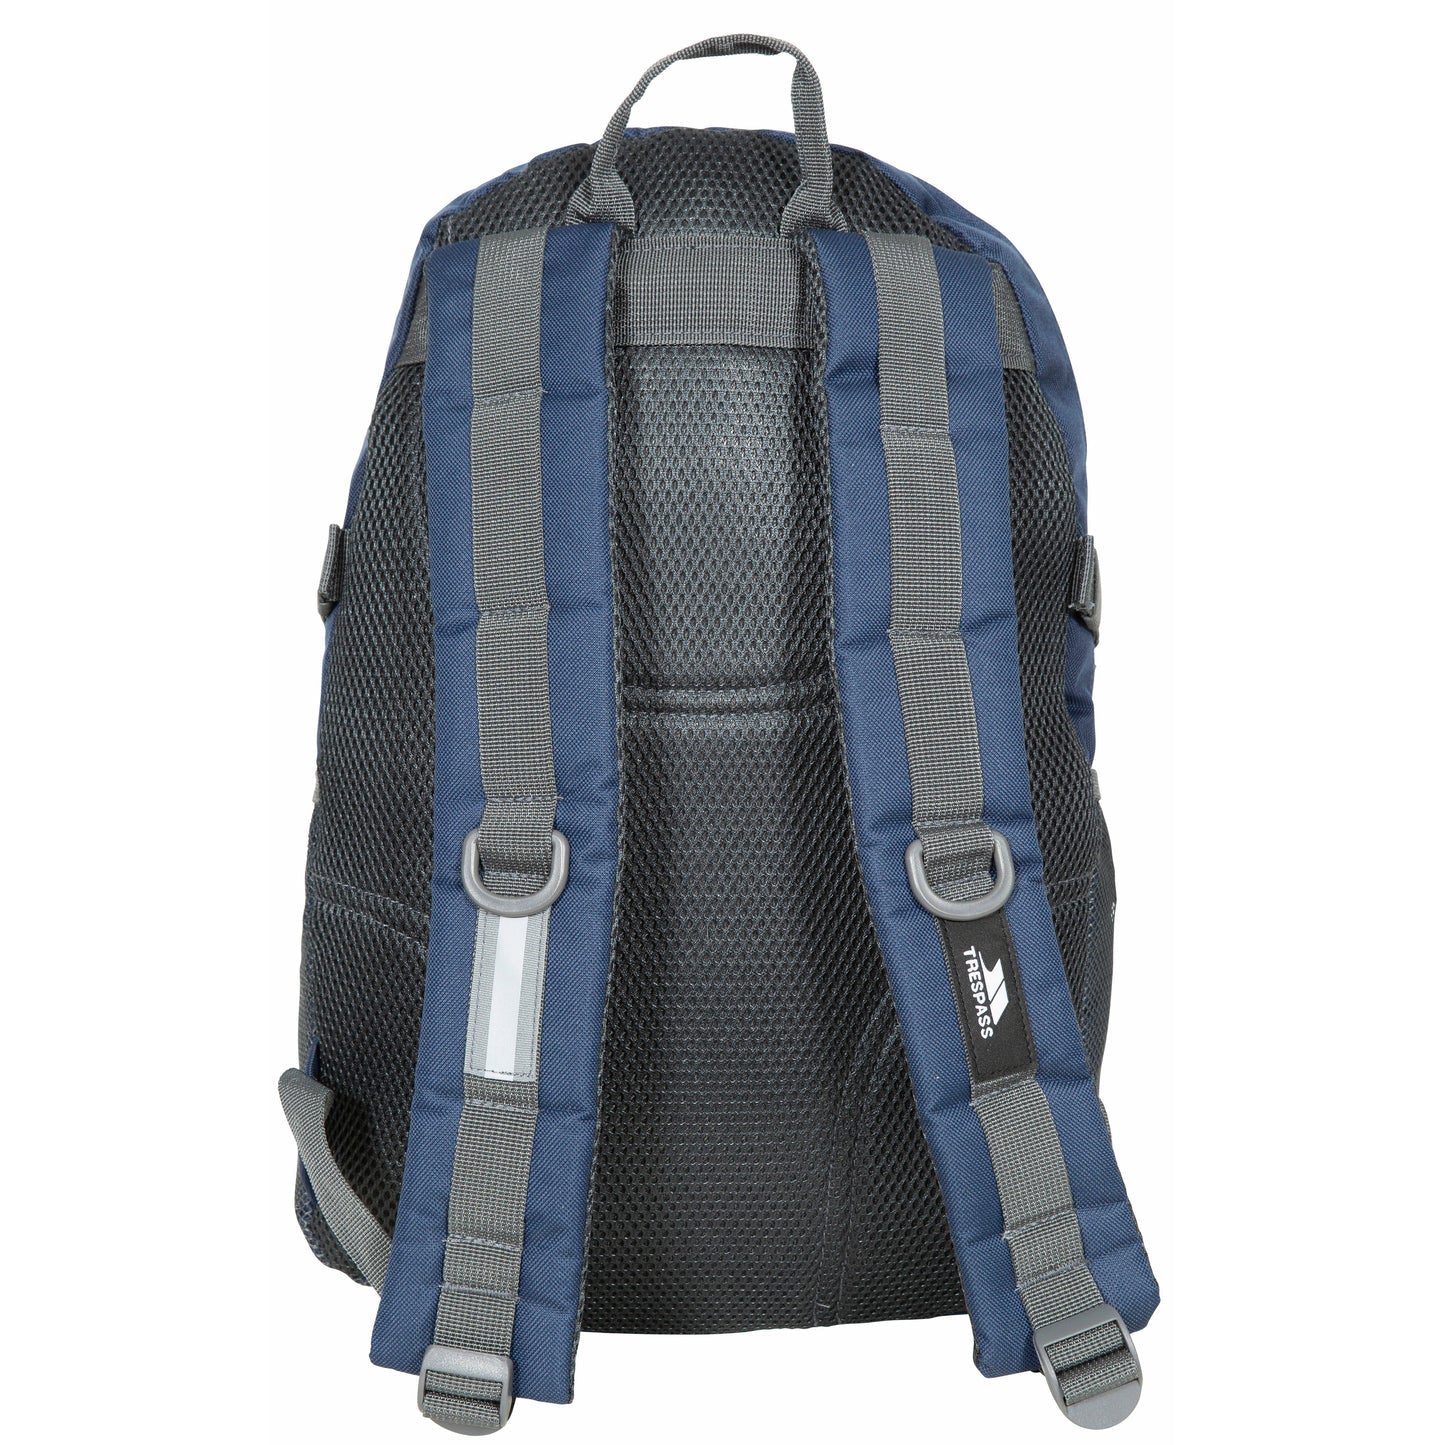 Trespass Albus 30 litre backpack